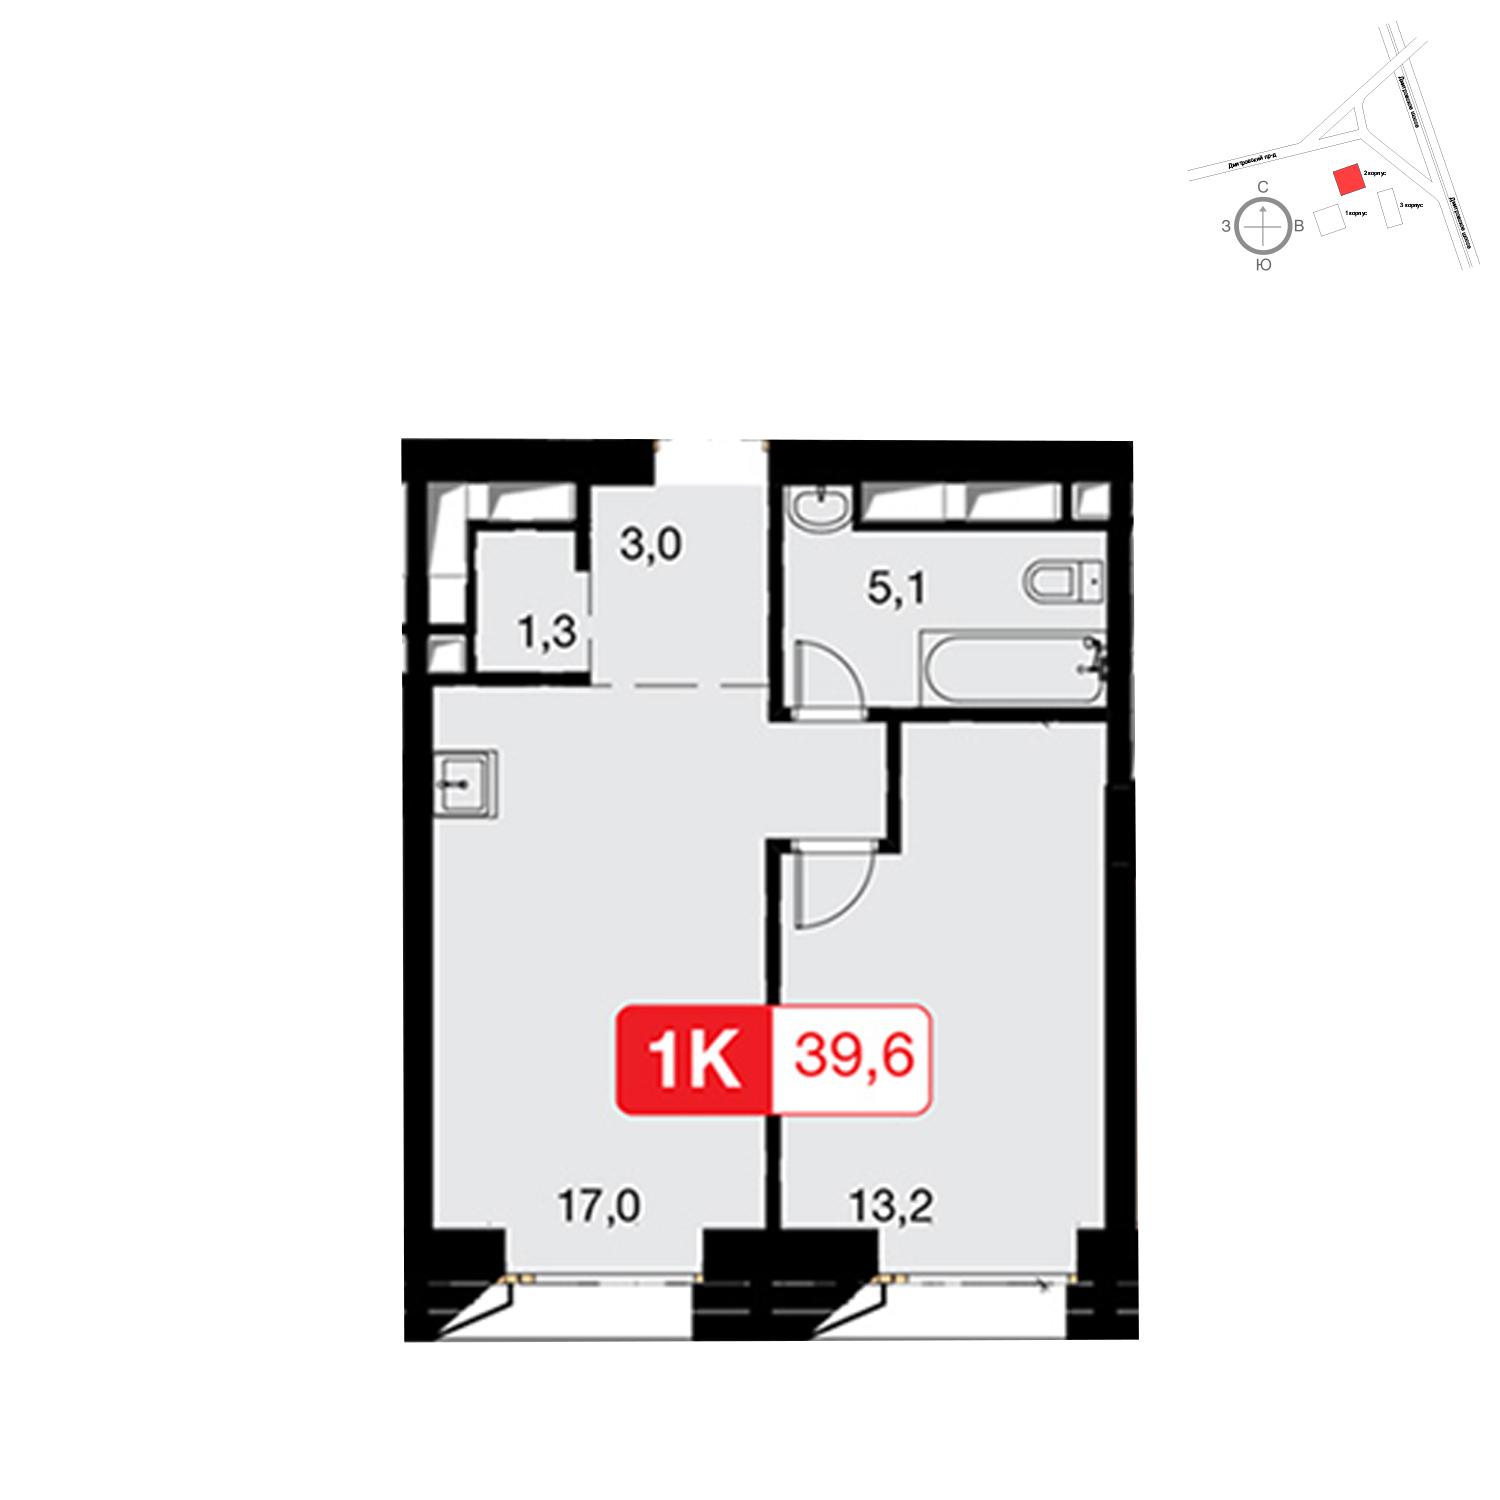 Продаётся 1-комнатная квартира в новостройке 39.6 кв.м. этаж 31/57 за 13 178 880 руб 